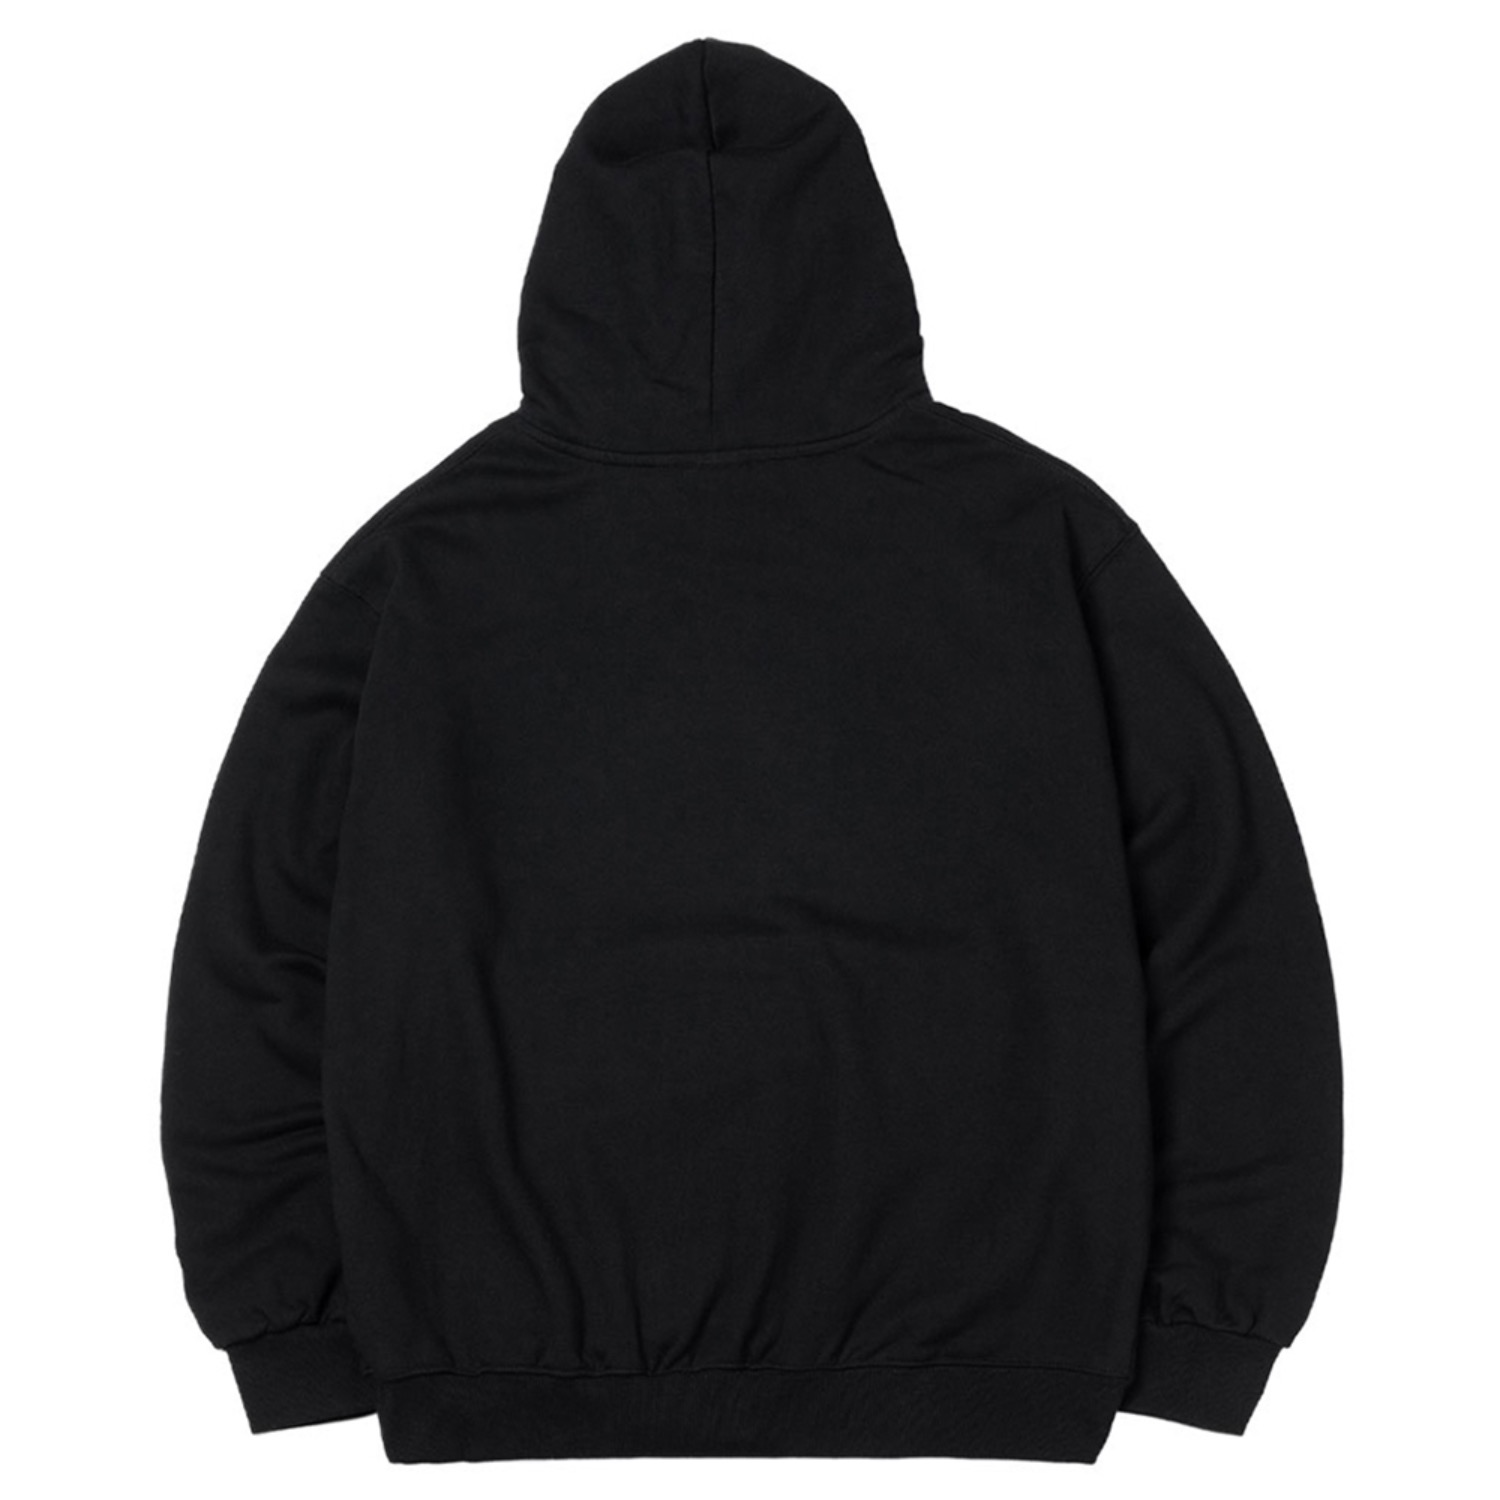 갓 후디 블랙 Gat hoodie (Black)